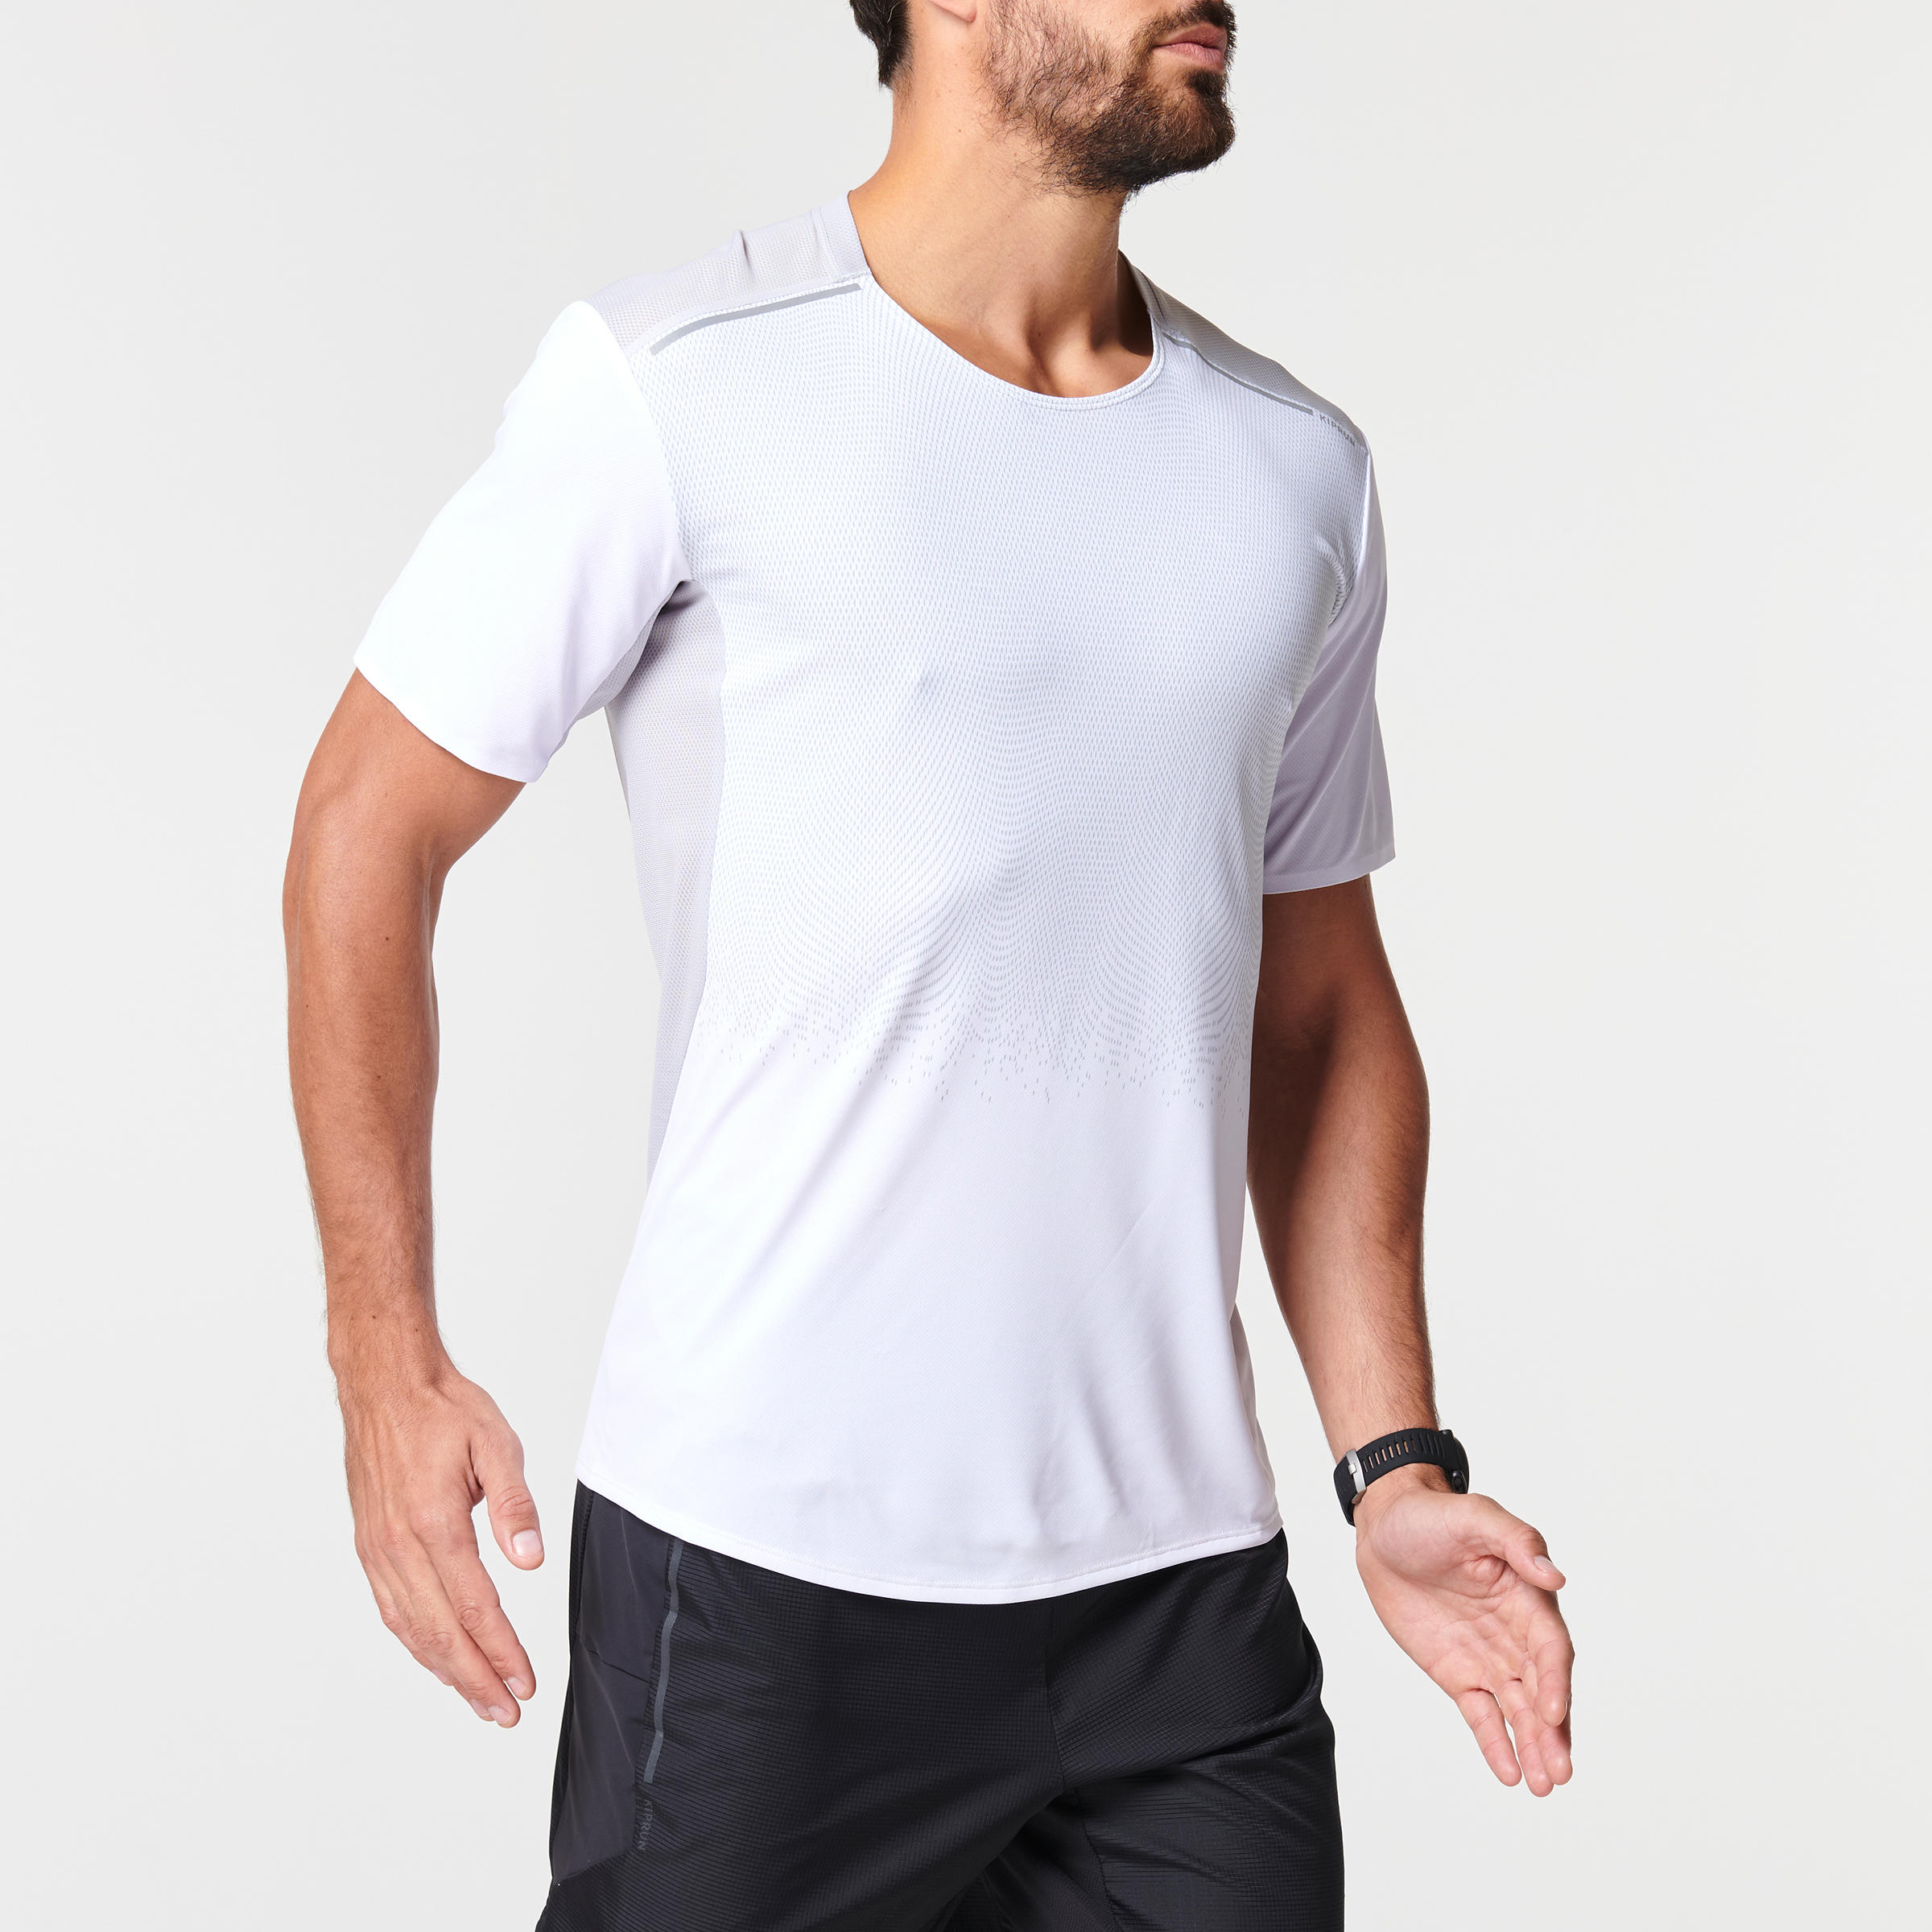 Didoo pour Homme Manche Complet Compression Couches de Base Haut Athlétisme Coupe Étroite Entrainement Fitness Long T-Shirts pour Vêtements de Sport 